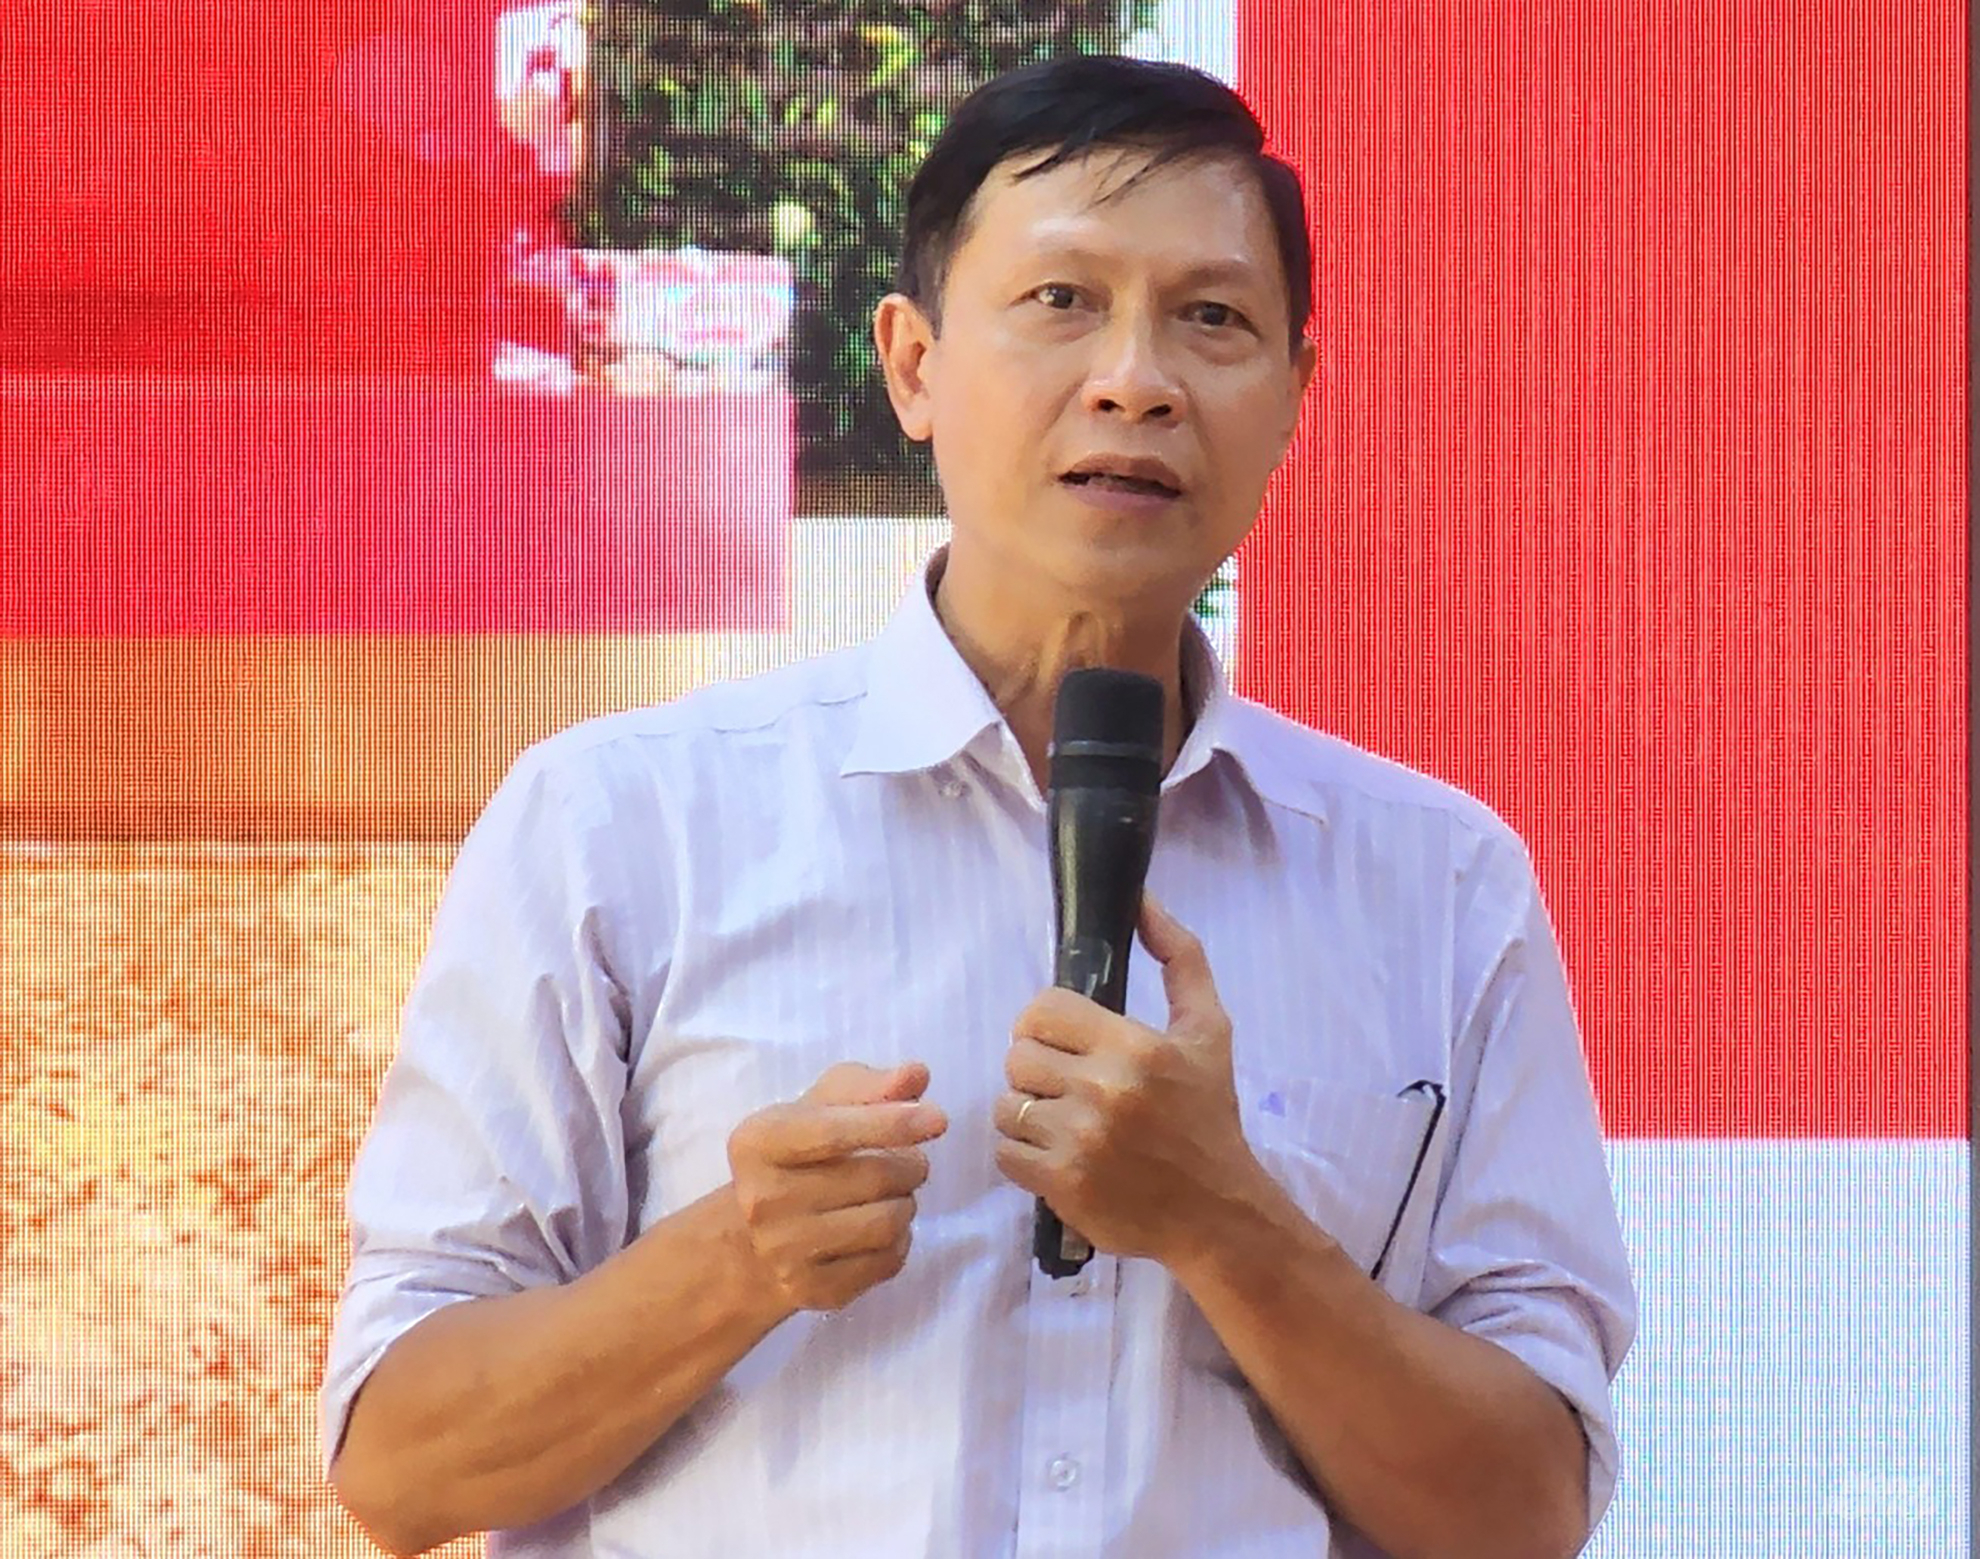 Ông Trần Quốc Toản, Phó Tổng Giám đốc Điện Quang chia sẻ tại buổi lễ. Ảnh: Minh Sáng.